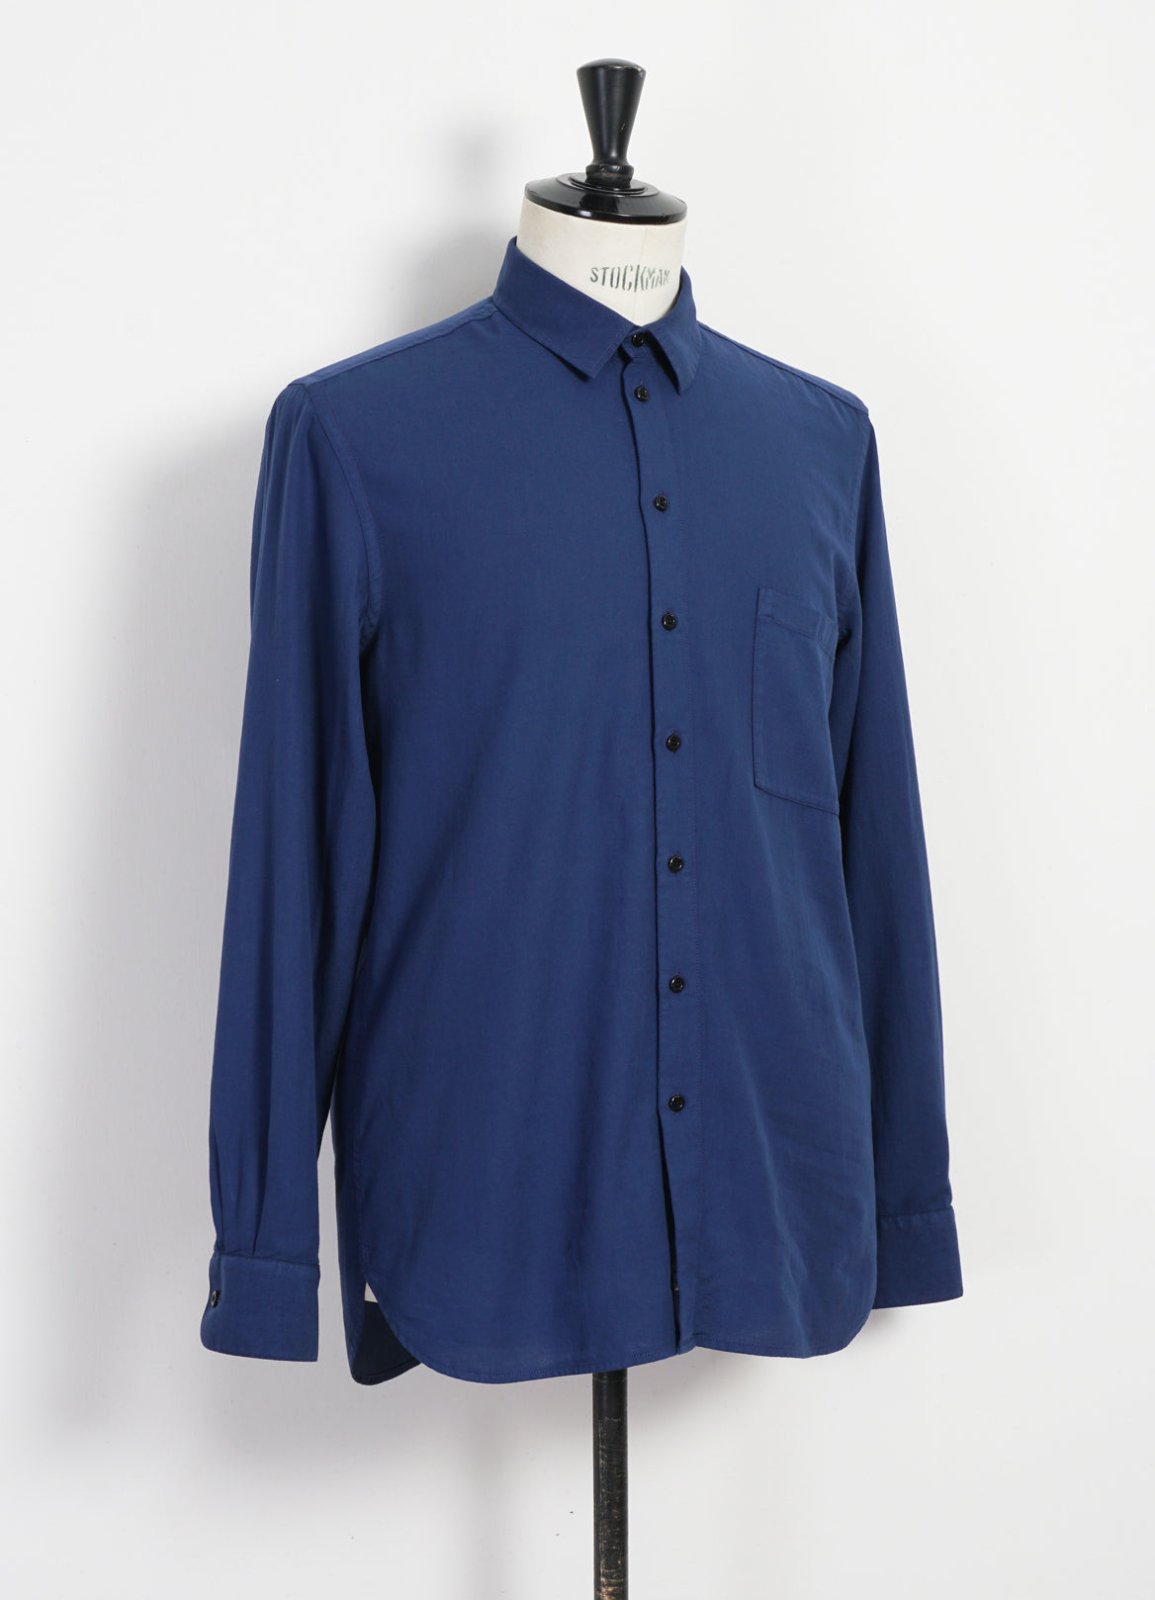 HANSEN GARMENTS - HENNING | Casual Classic Shirt | Cool Blue - HANSEN Garments